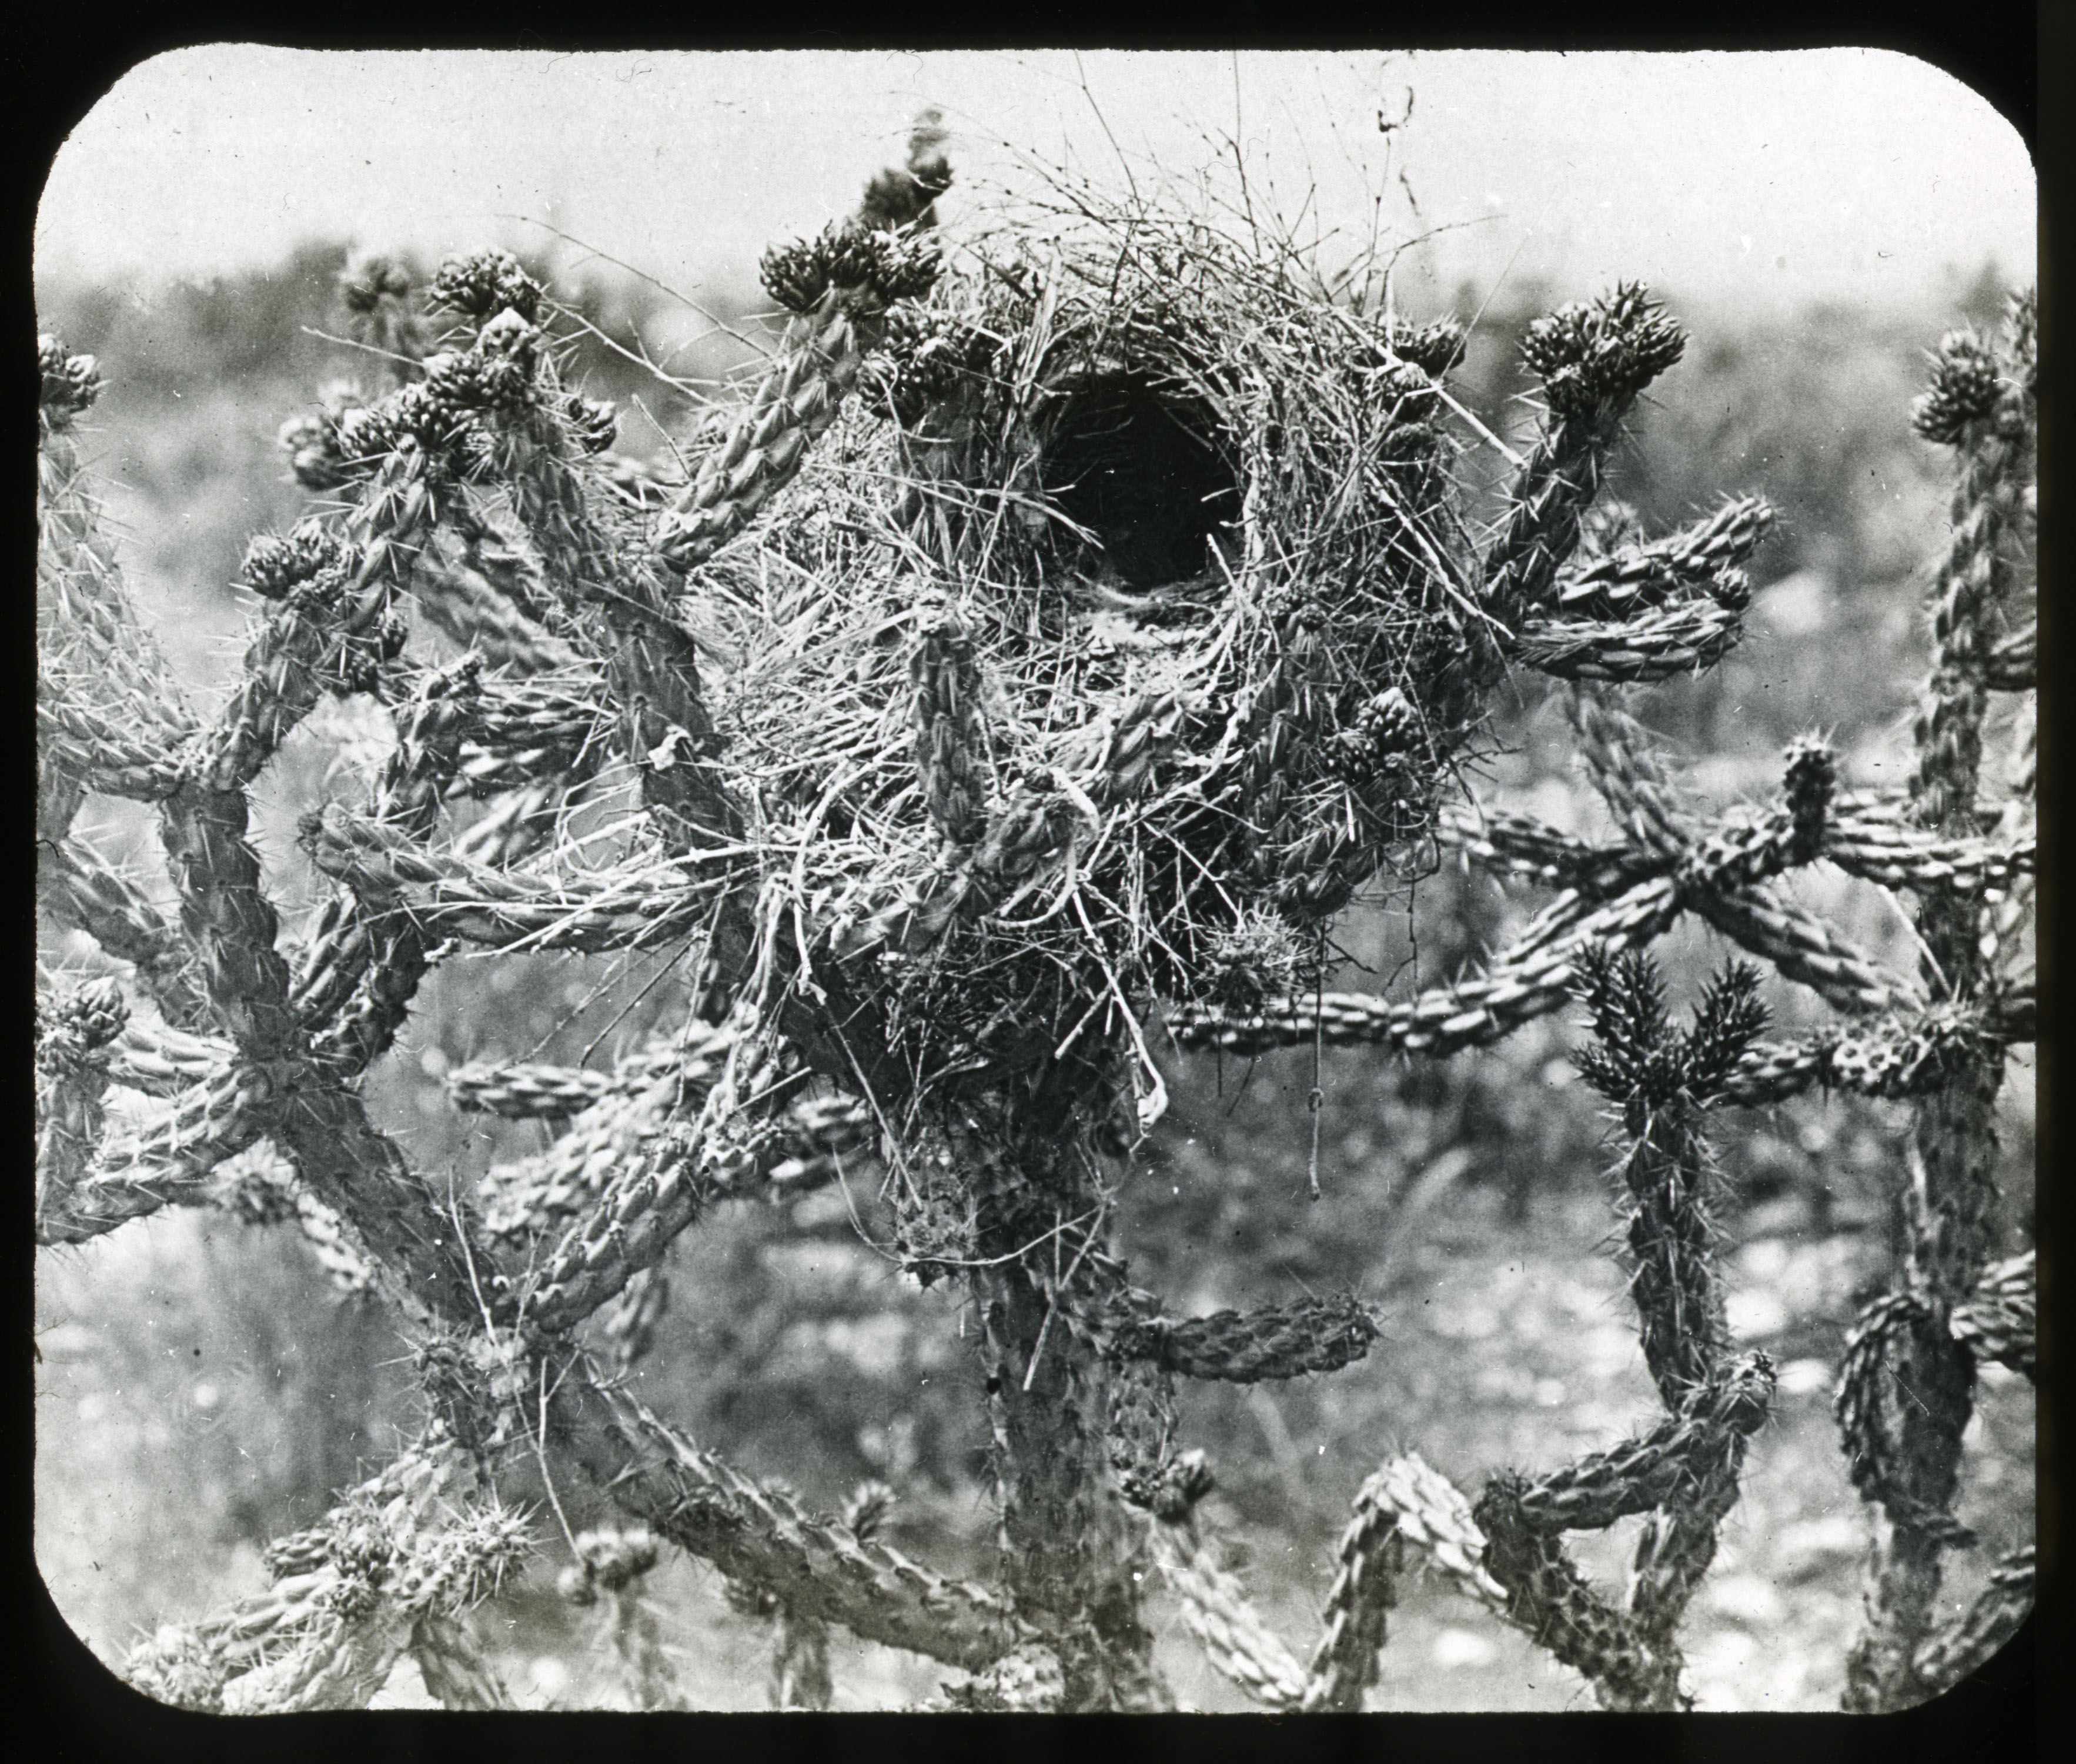 Cactus Wren’s nest, Undated, by W.M. Pierce. Glass lantern slide, Lantern Slide #50.